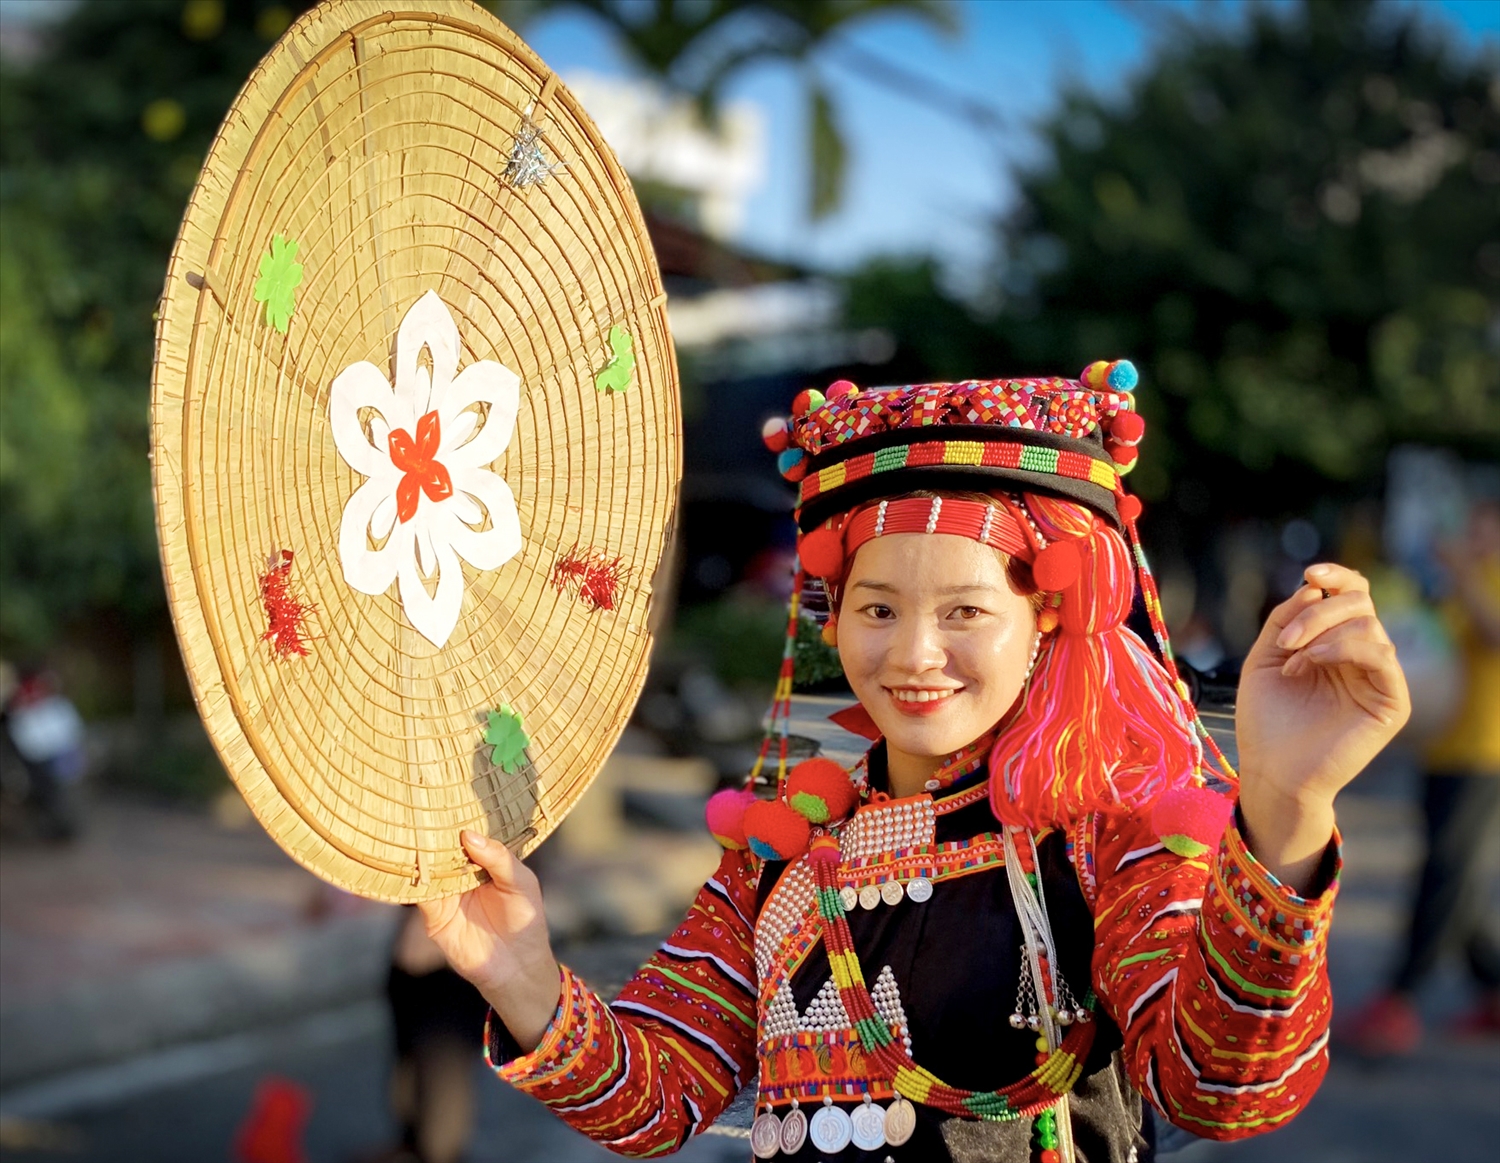 Rực rỡ sắc đỏ trong trang phục truyền thống cùng vành nón lá to là biểu tượng của thiếu nhữ Hà Nhì nơi thượng nguồn sông Đà